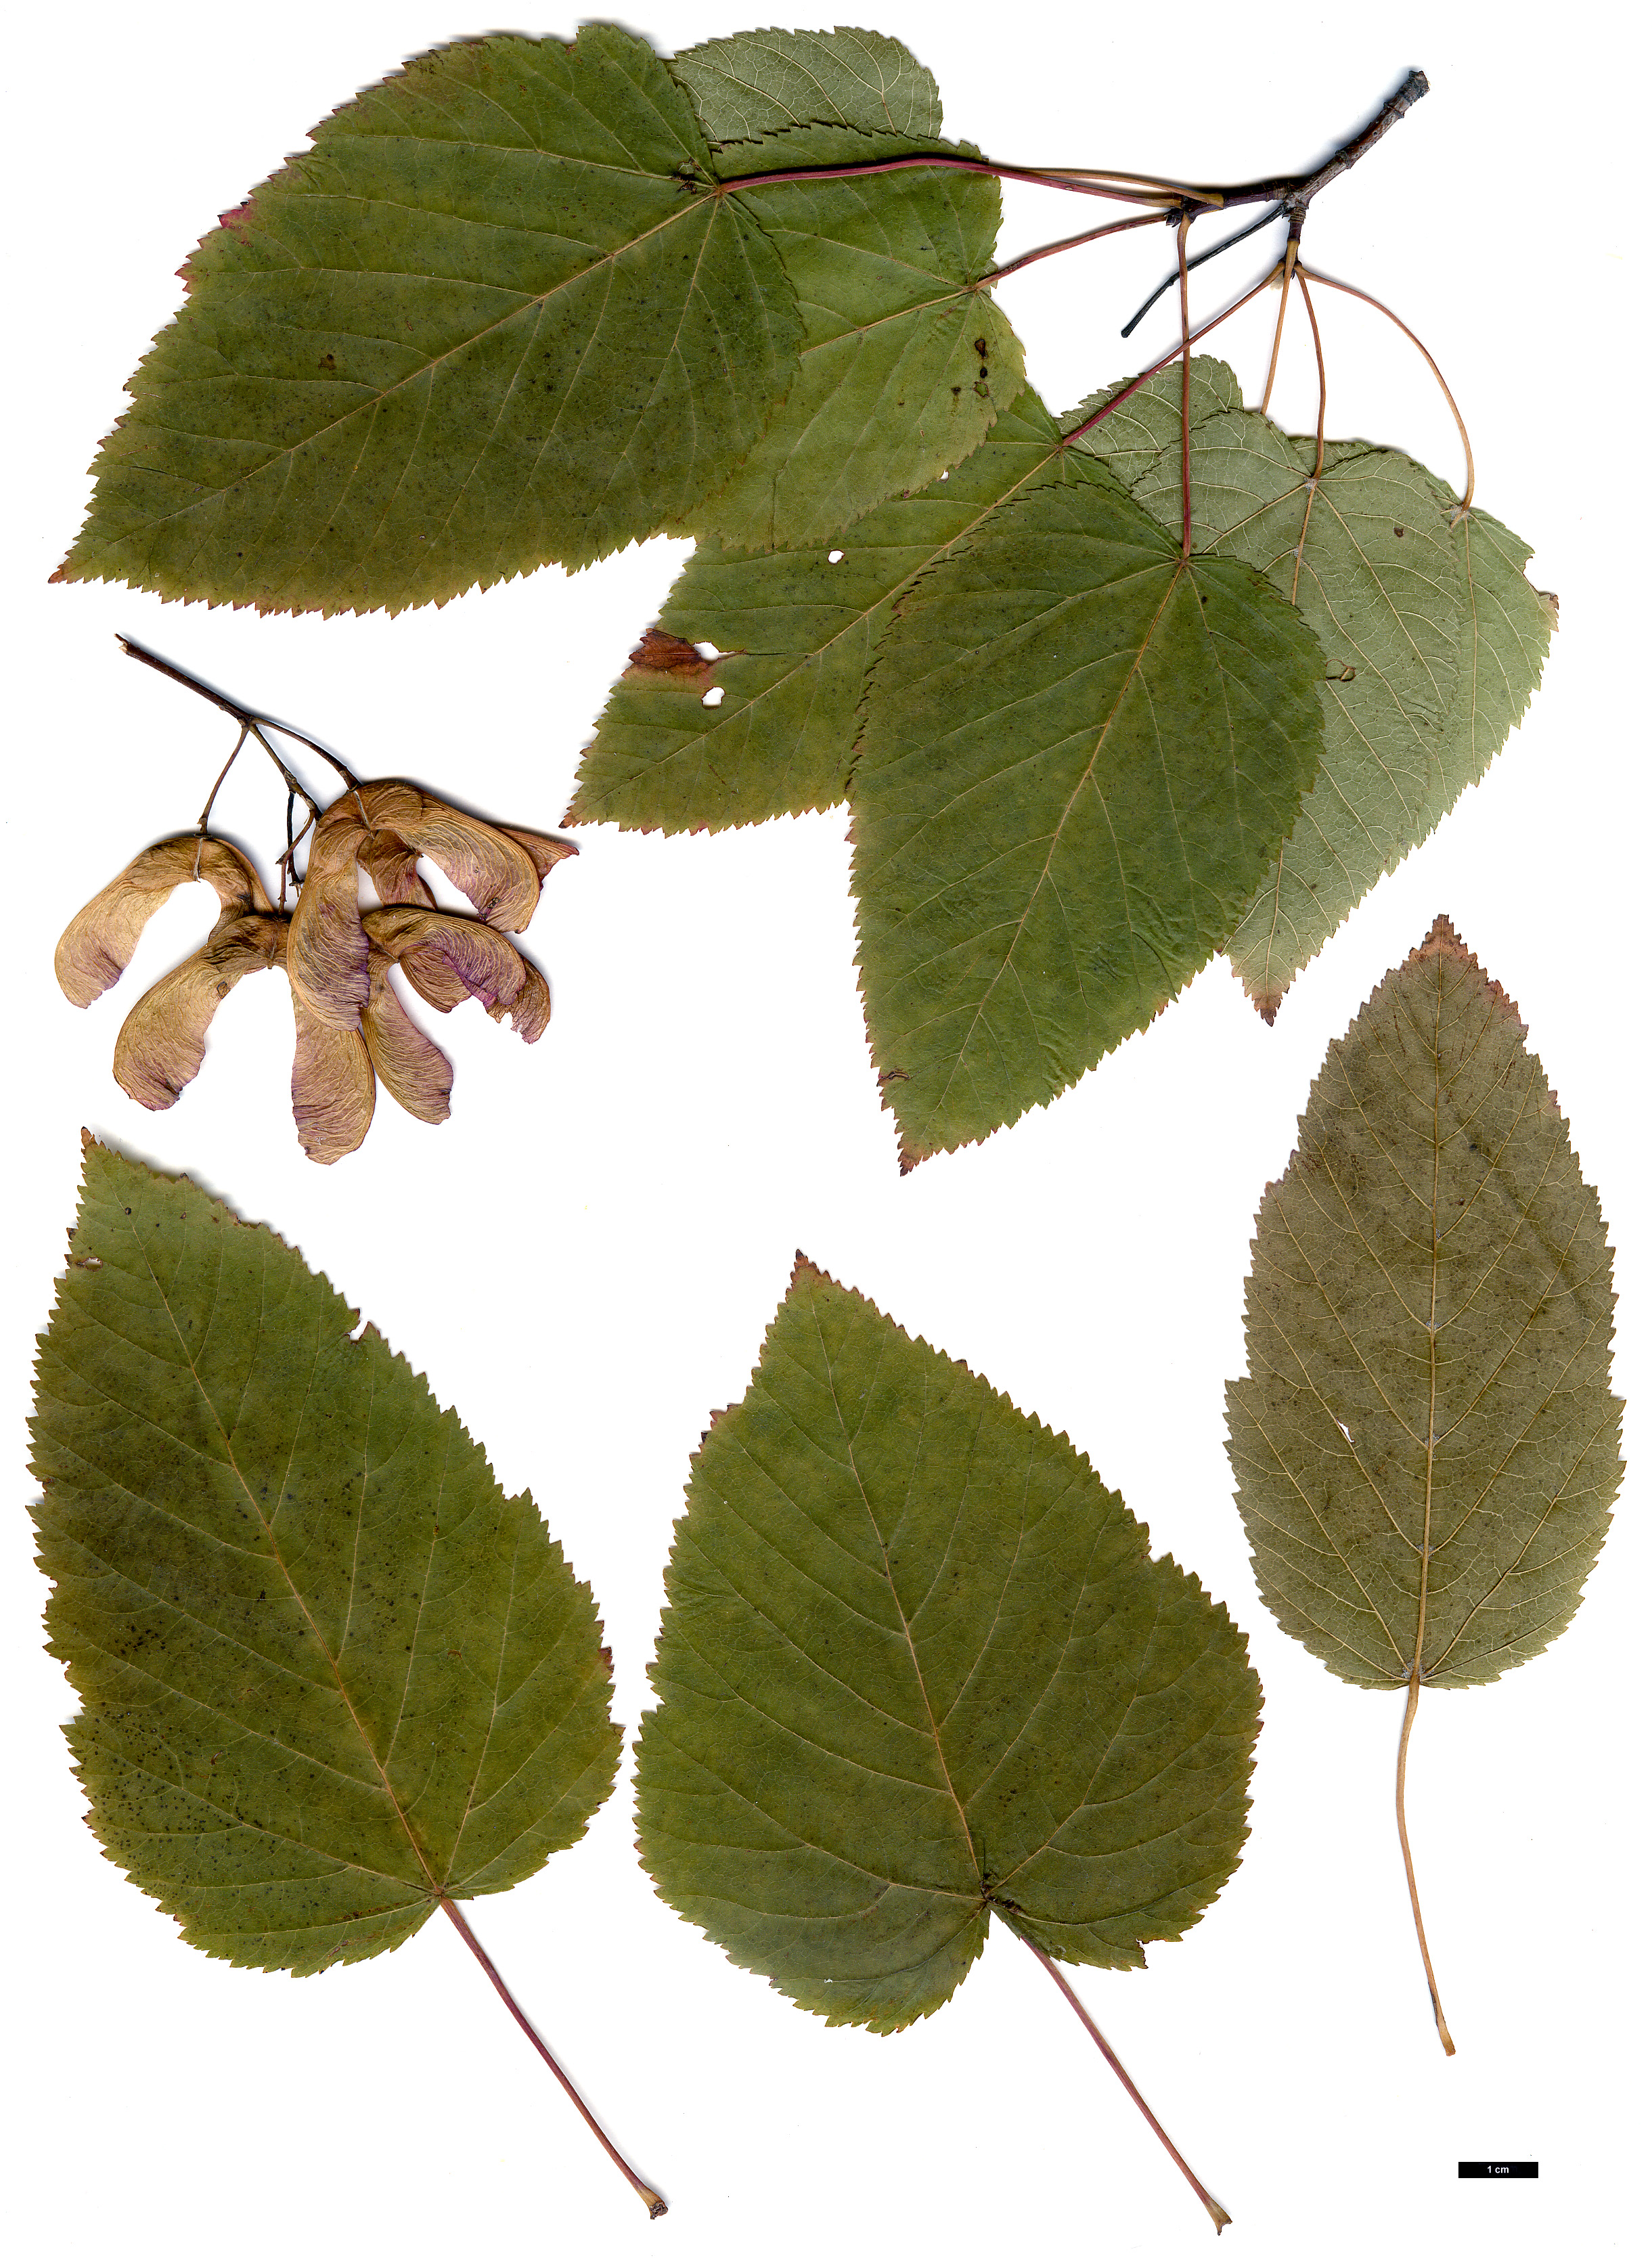 High resolution image: Family: Sapindaceae - Genus: Acer - Taxon: tataricum - SpeciesSub: subsp. tataricum